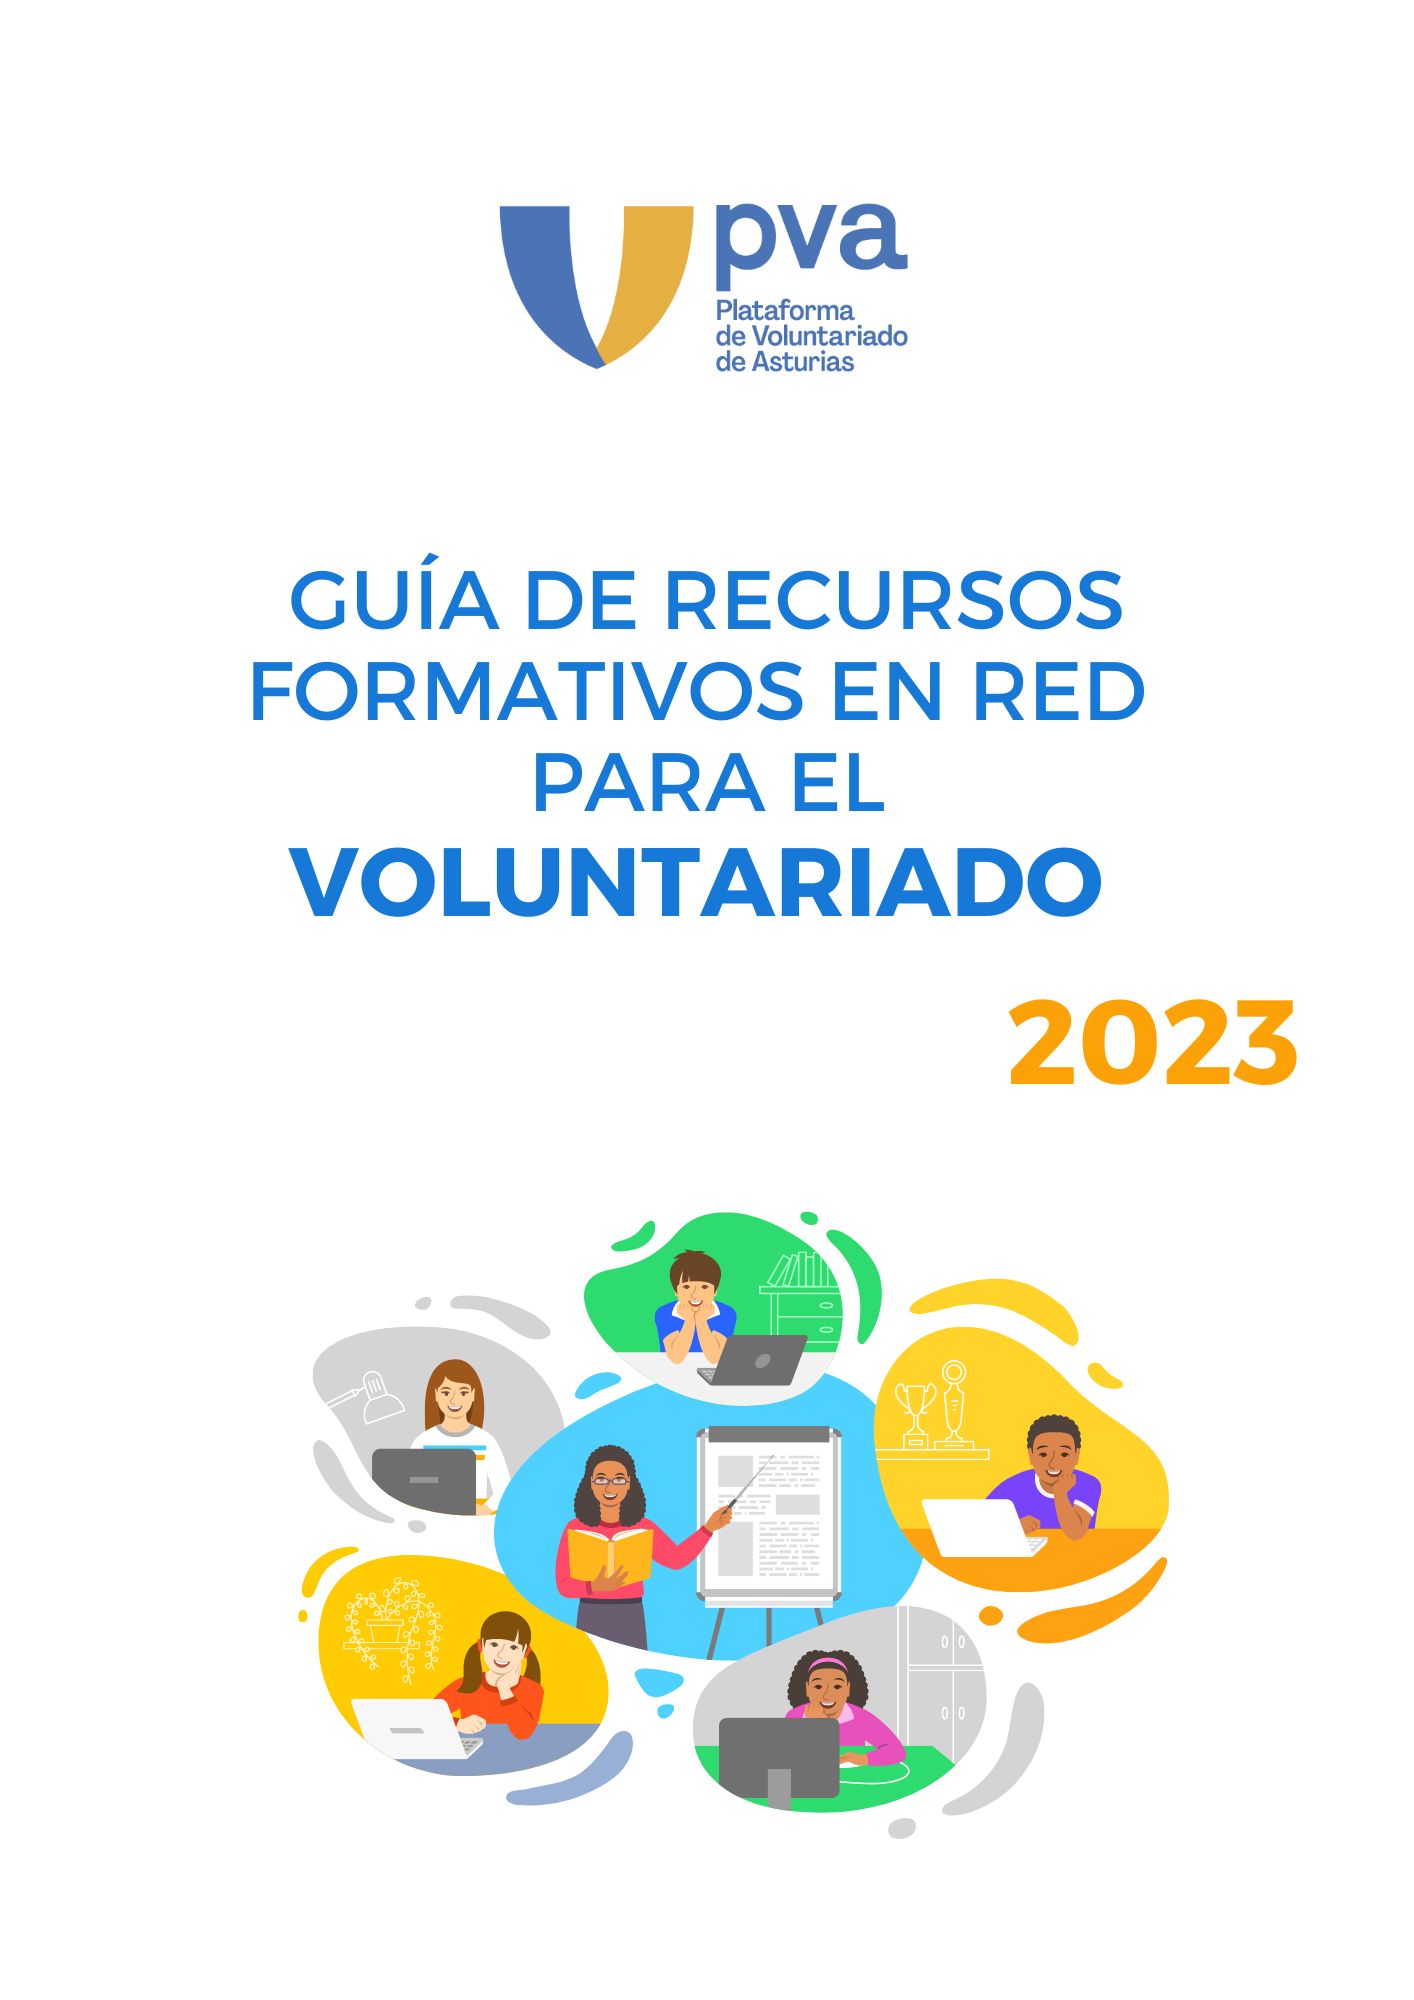 Nueva Guía de Recursos Formativos en Red para el Voluntariado de Asturias